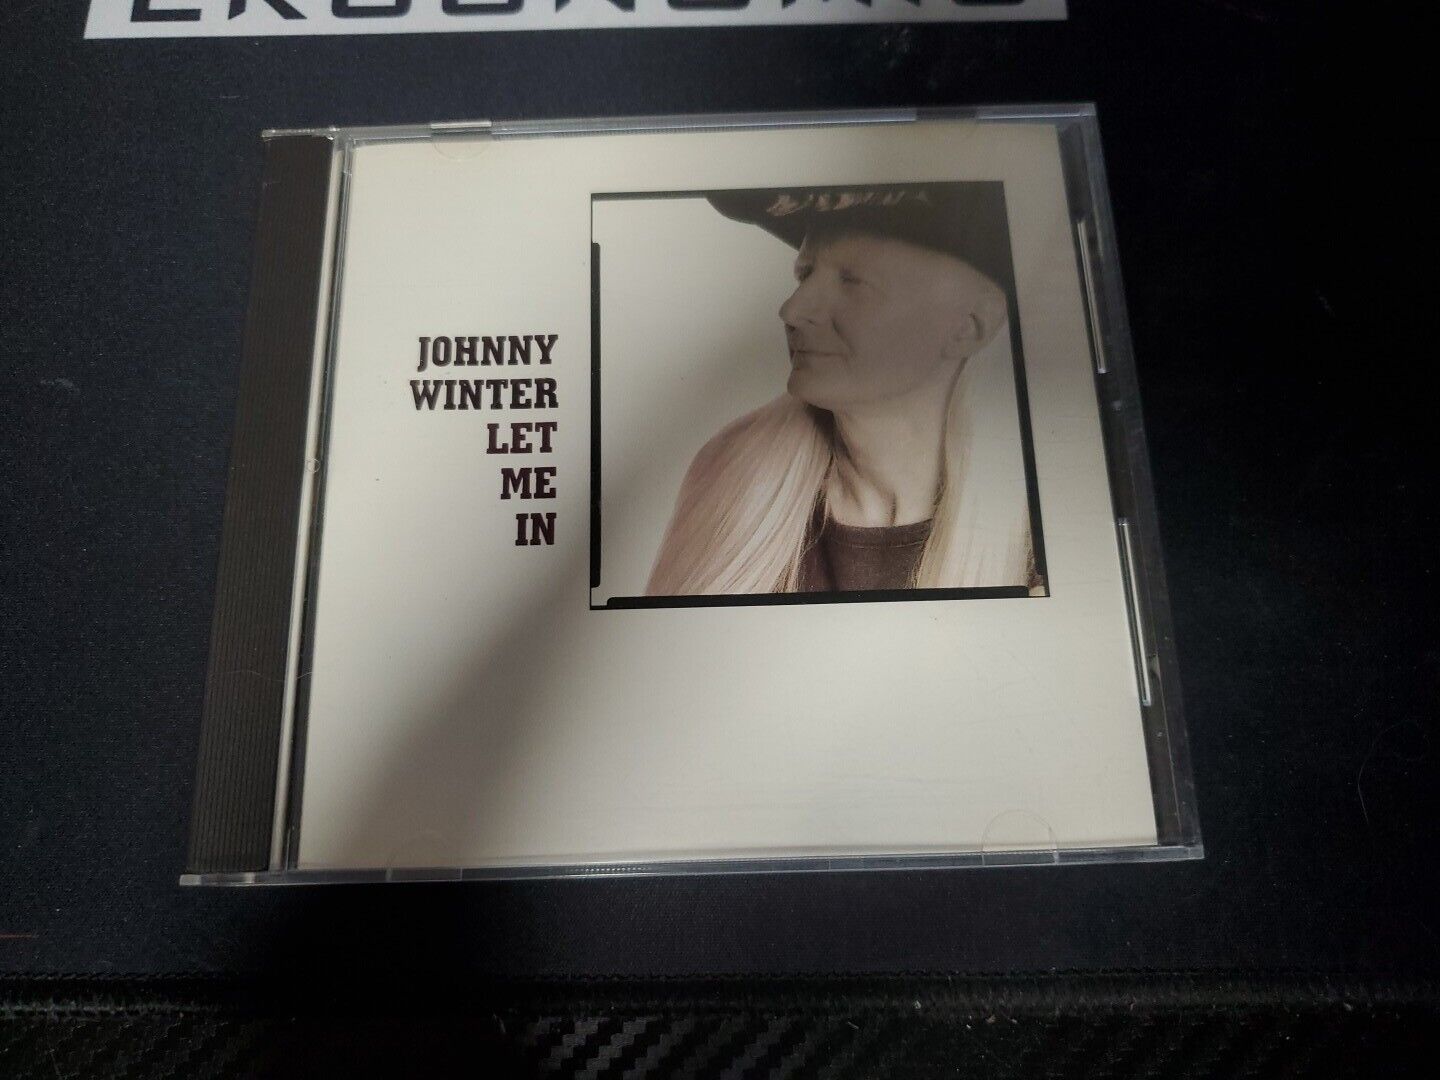 Johnny Winter - Let Me In CD (1991 Virgin Records)